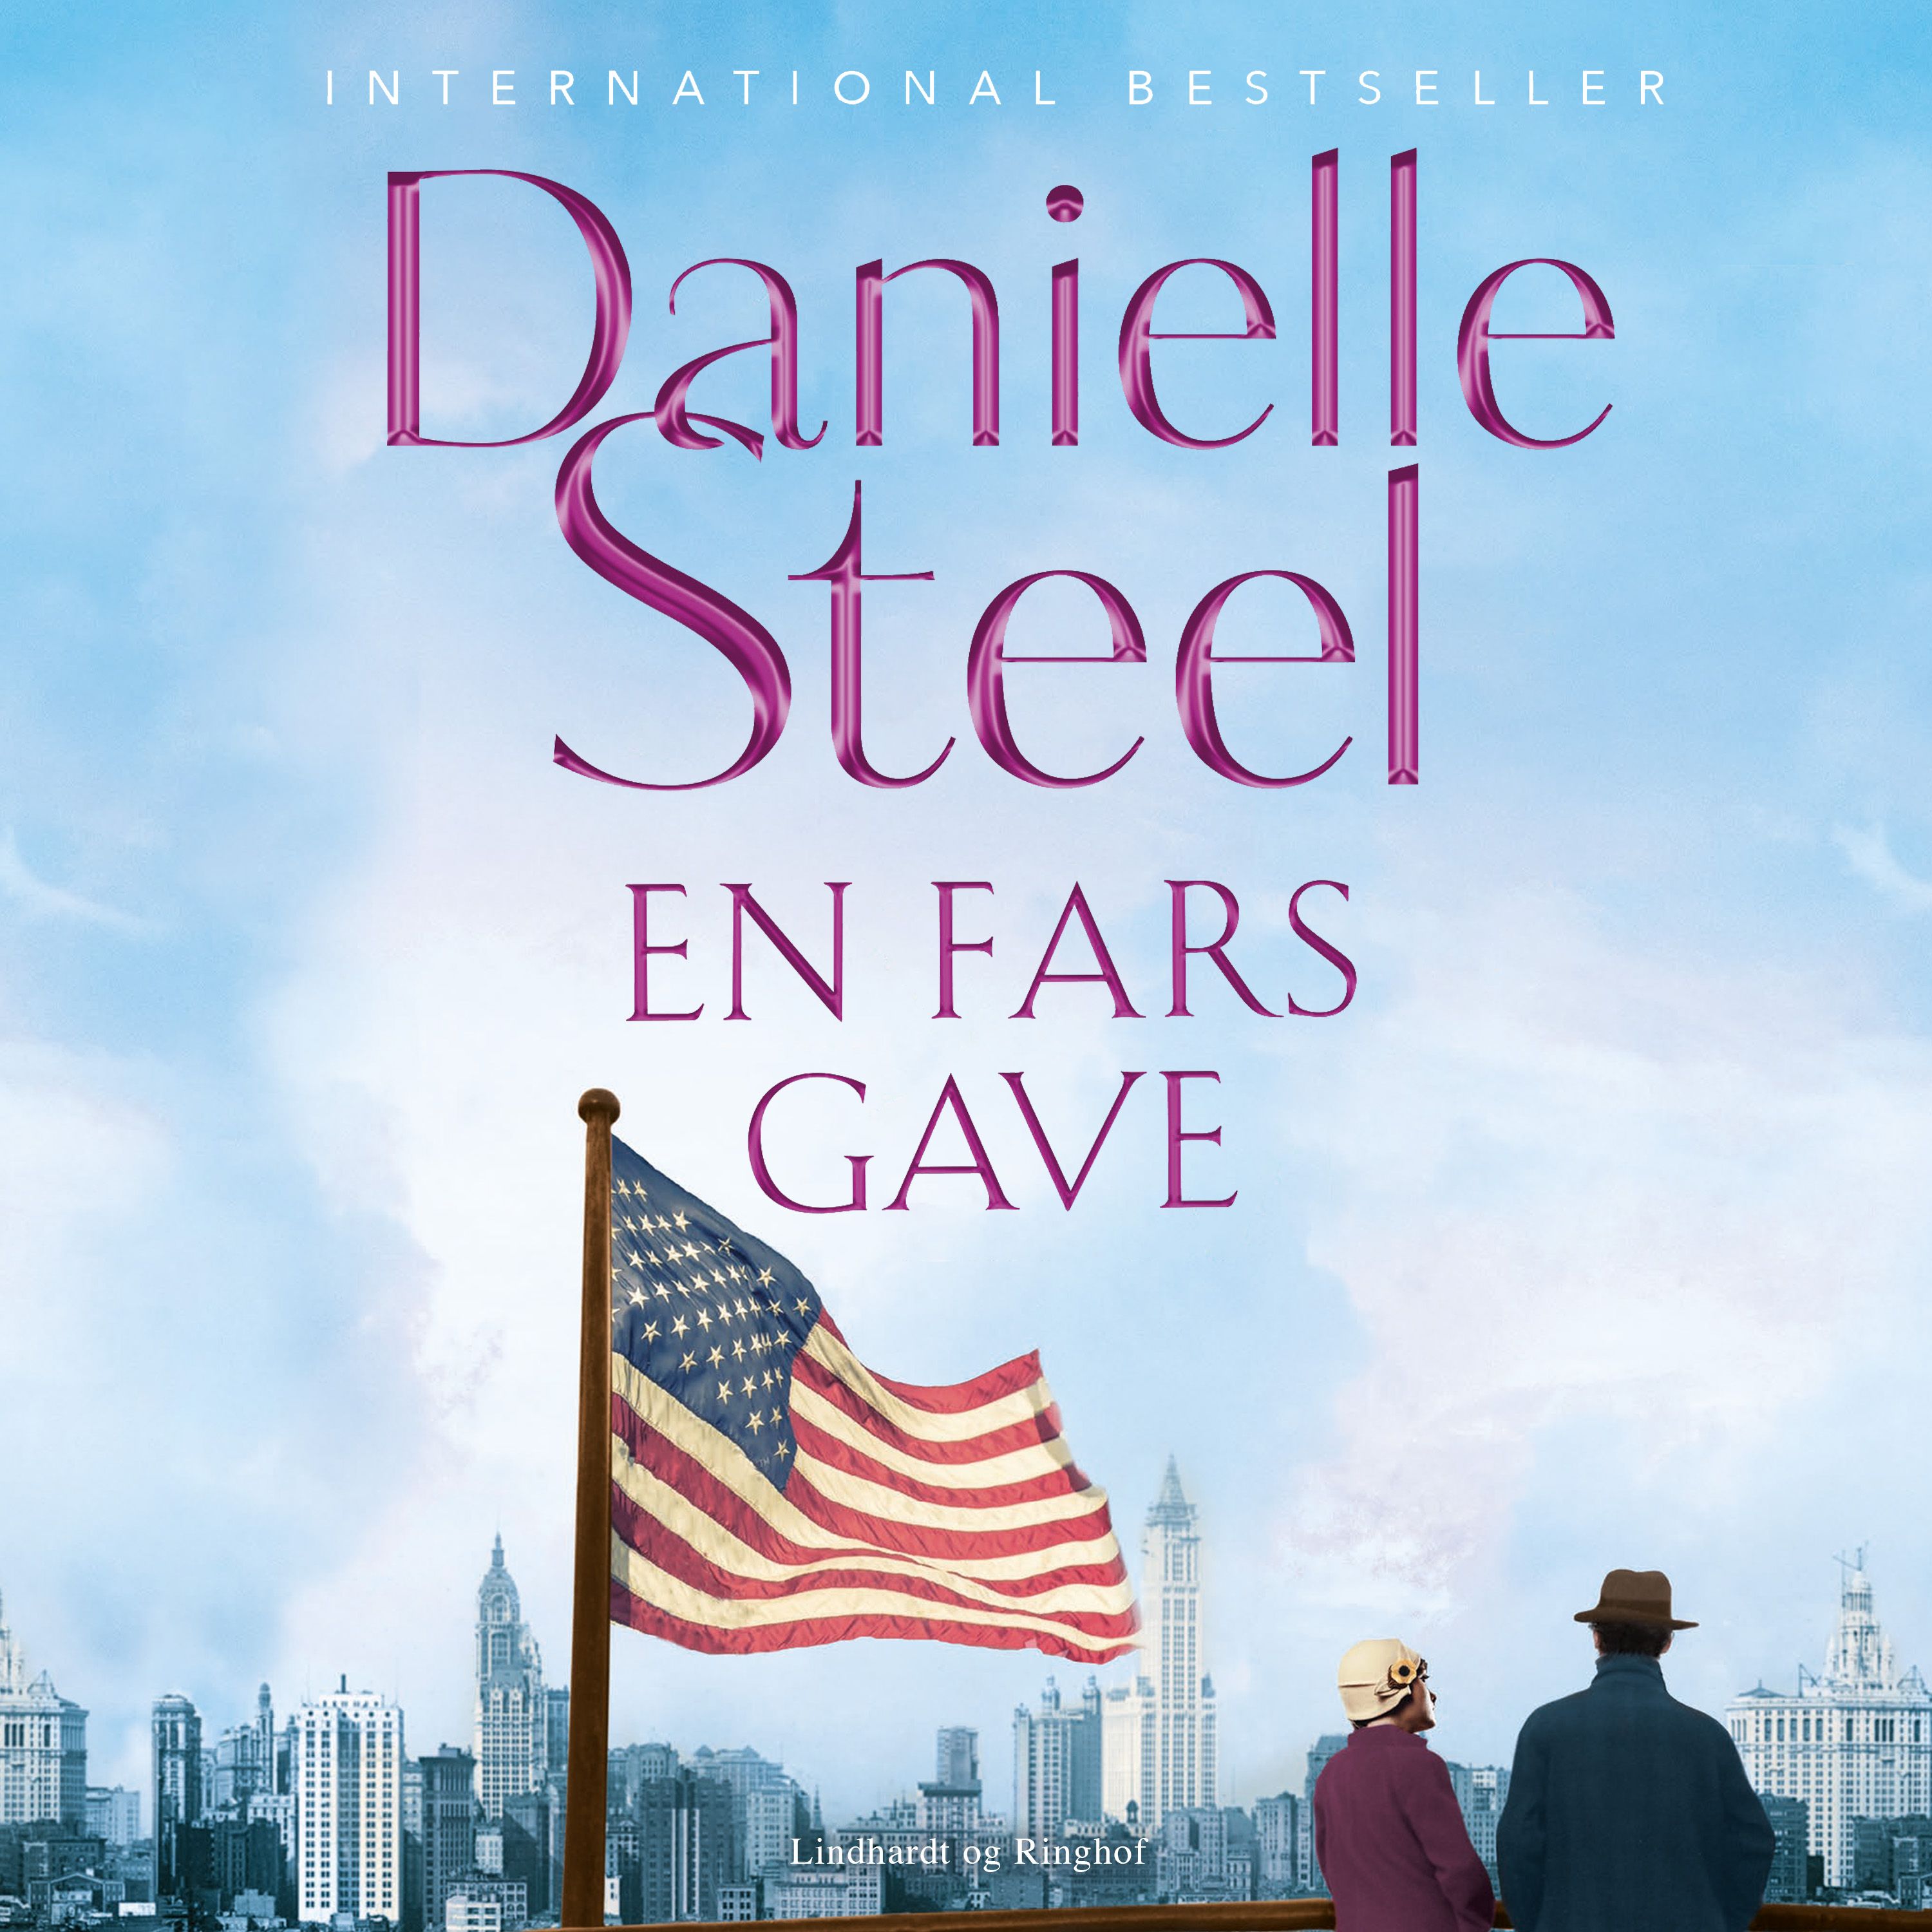 En fars gave, ljudbok av Danielle Steel